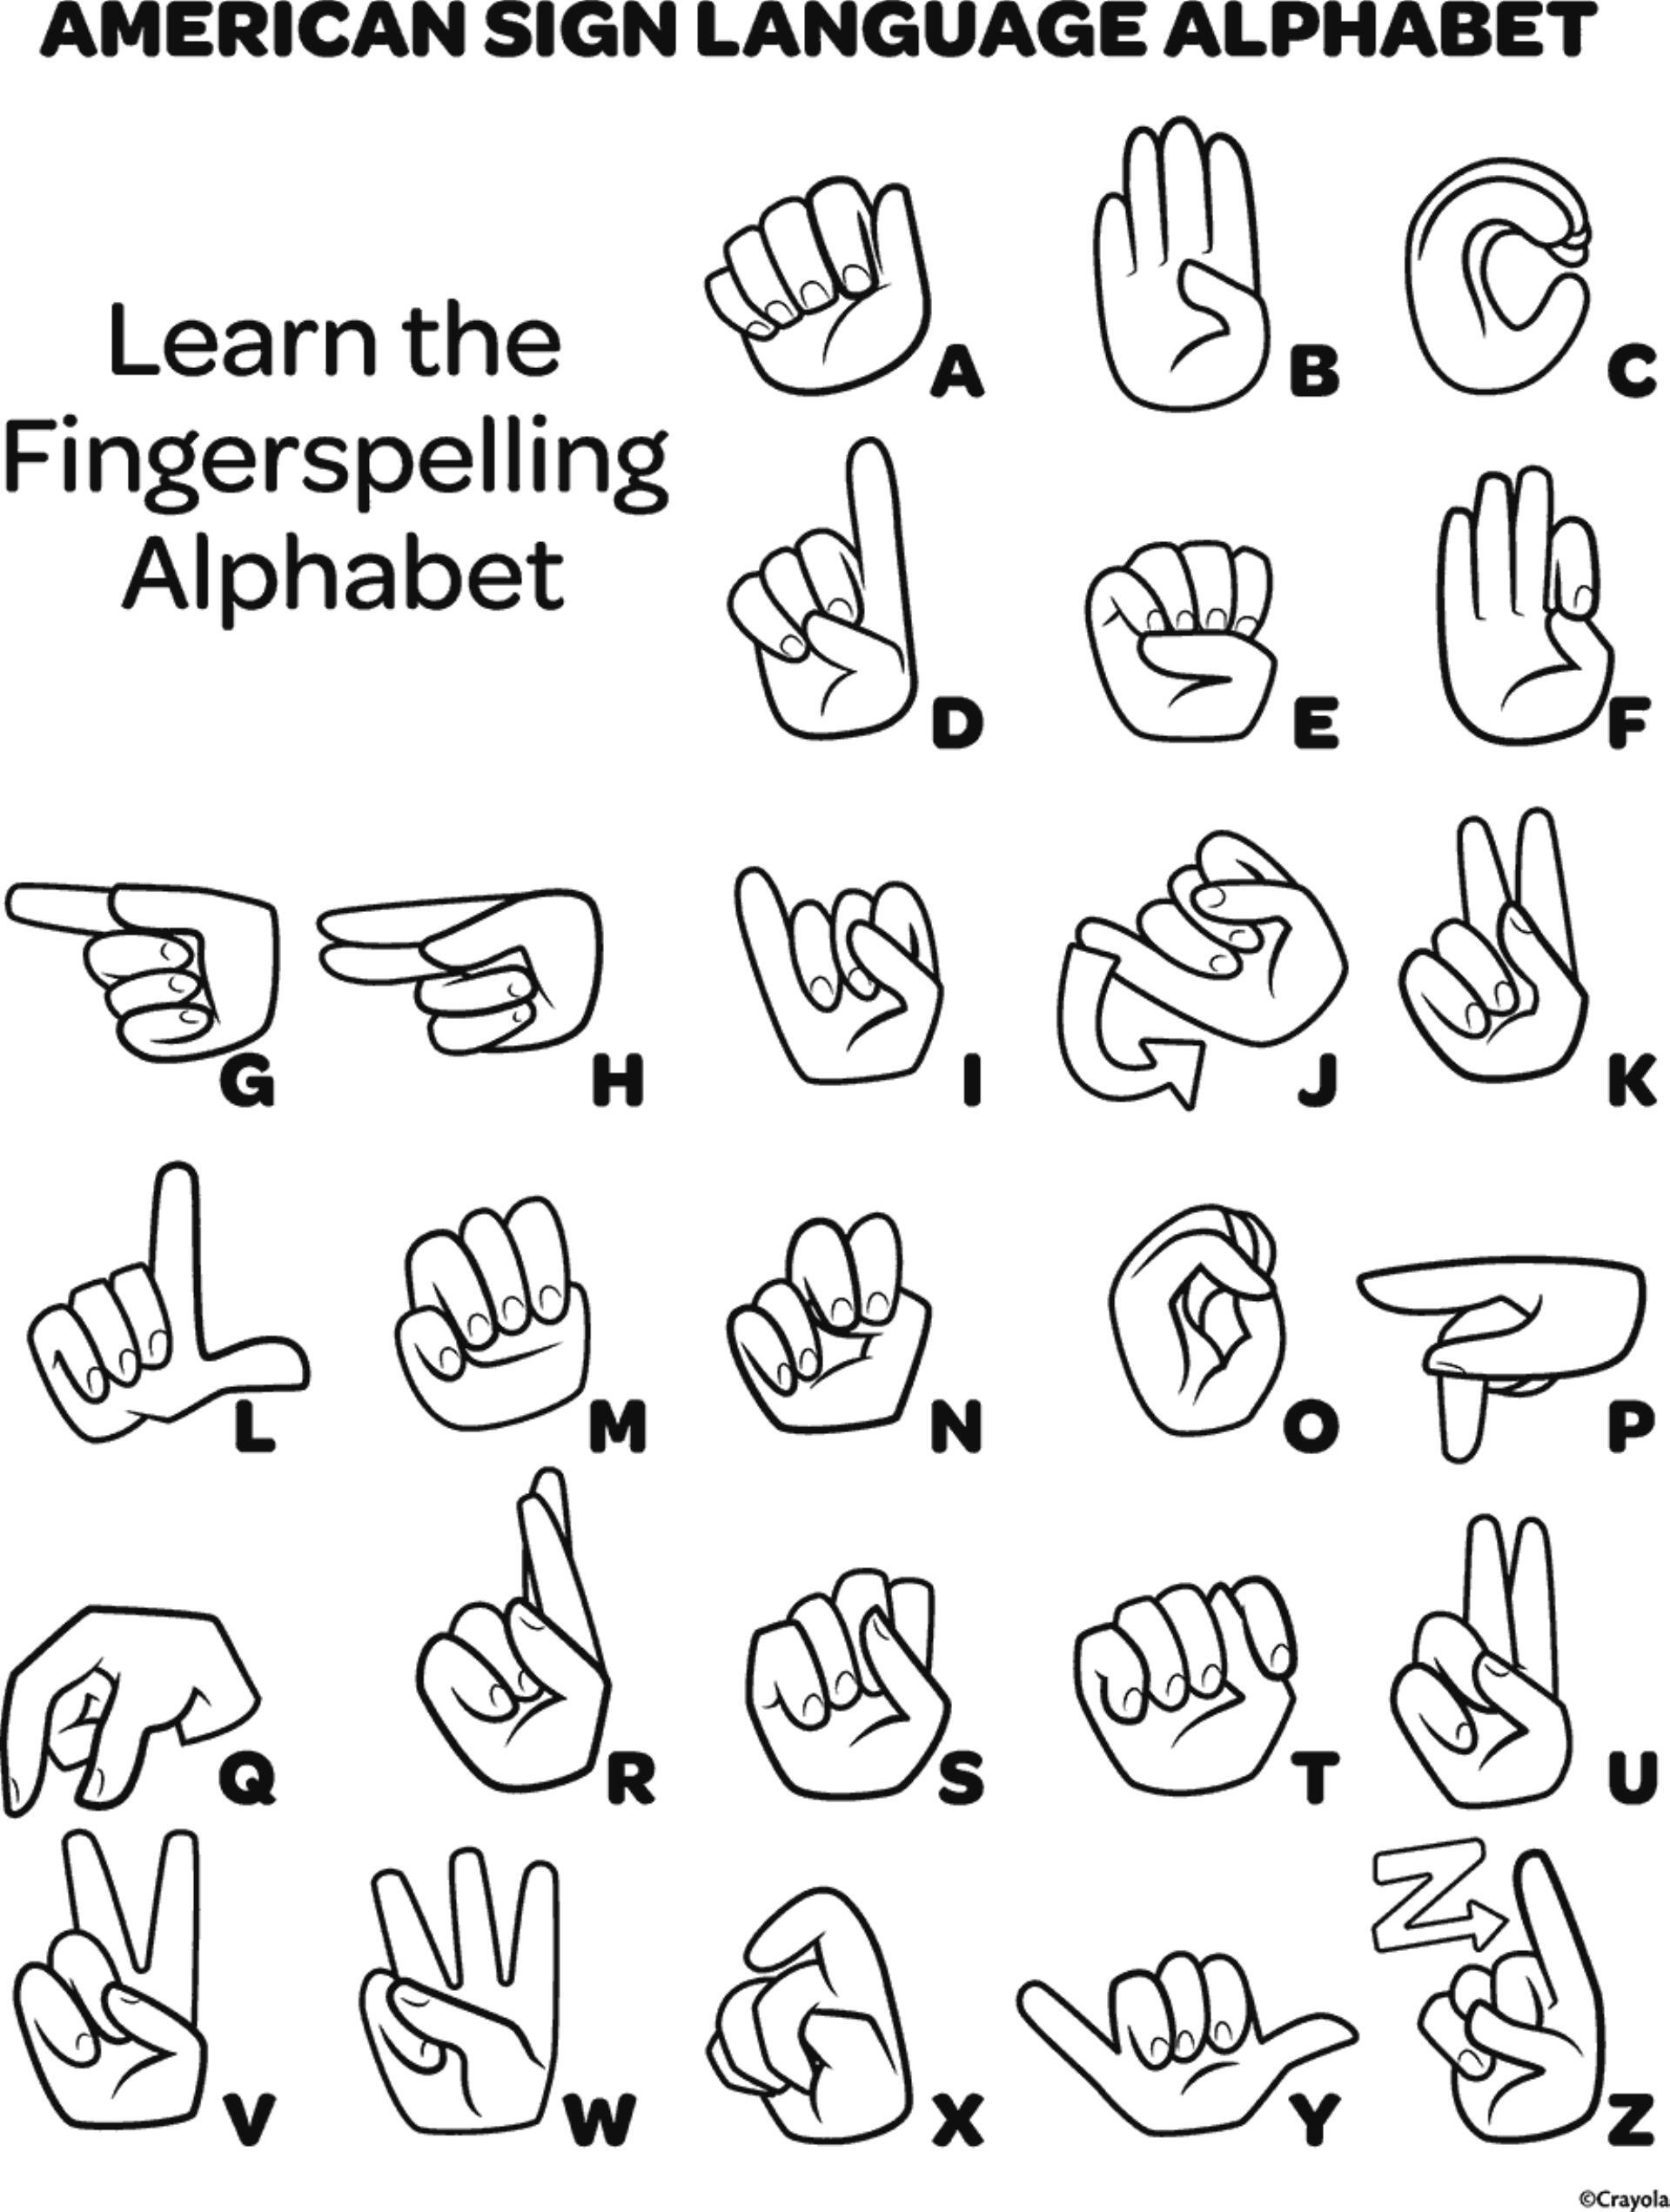 Disability Awareness ASL Alphabet